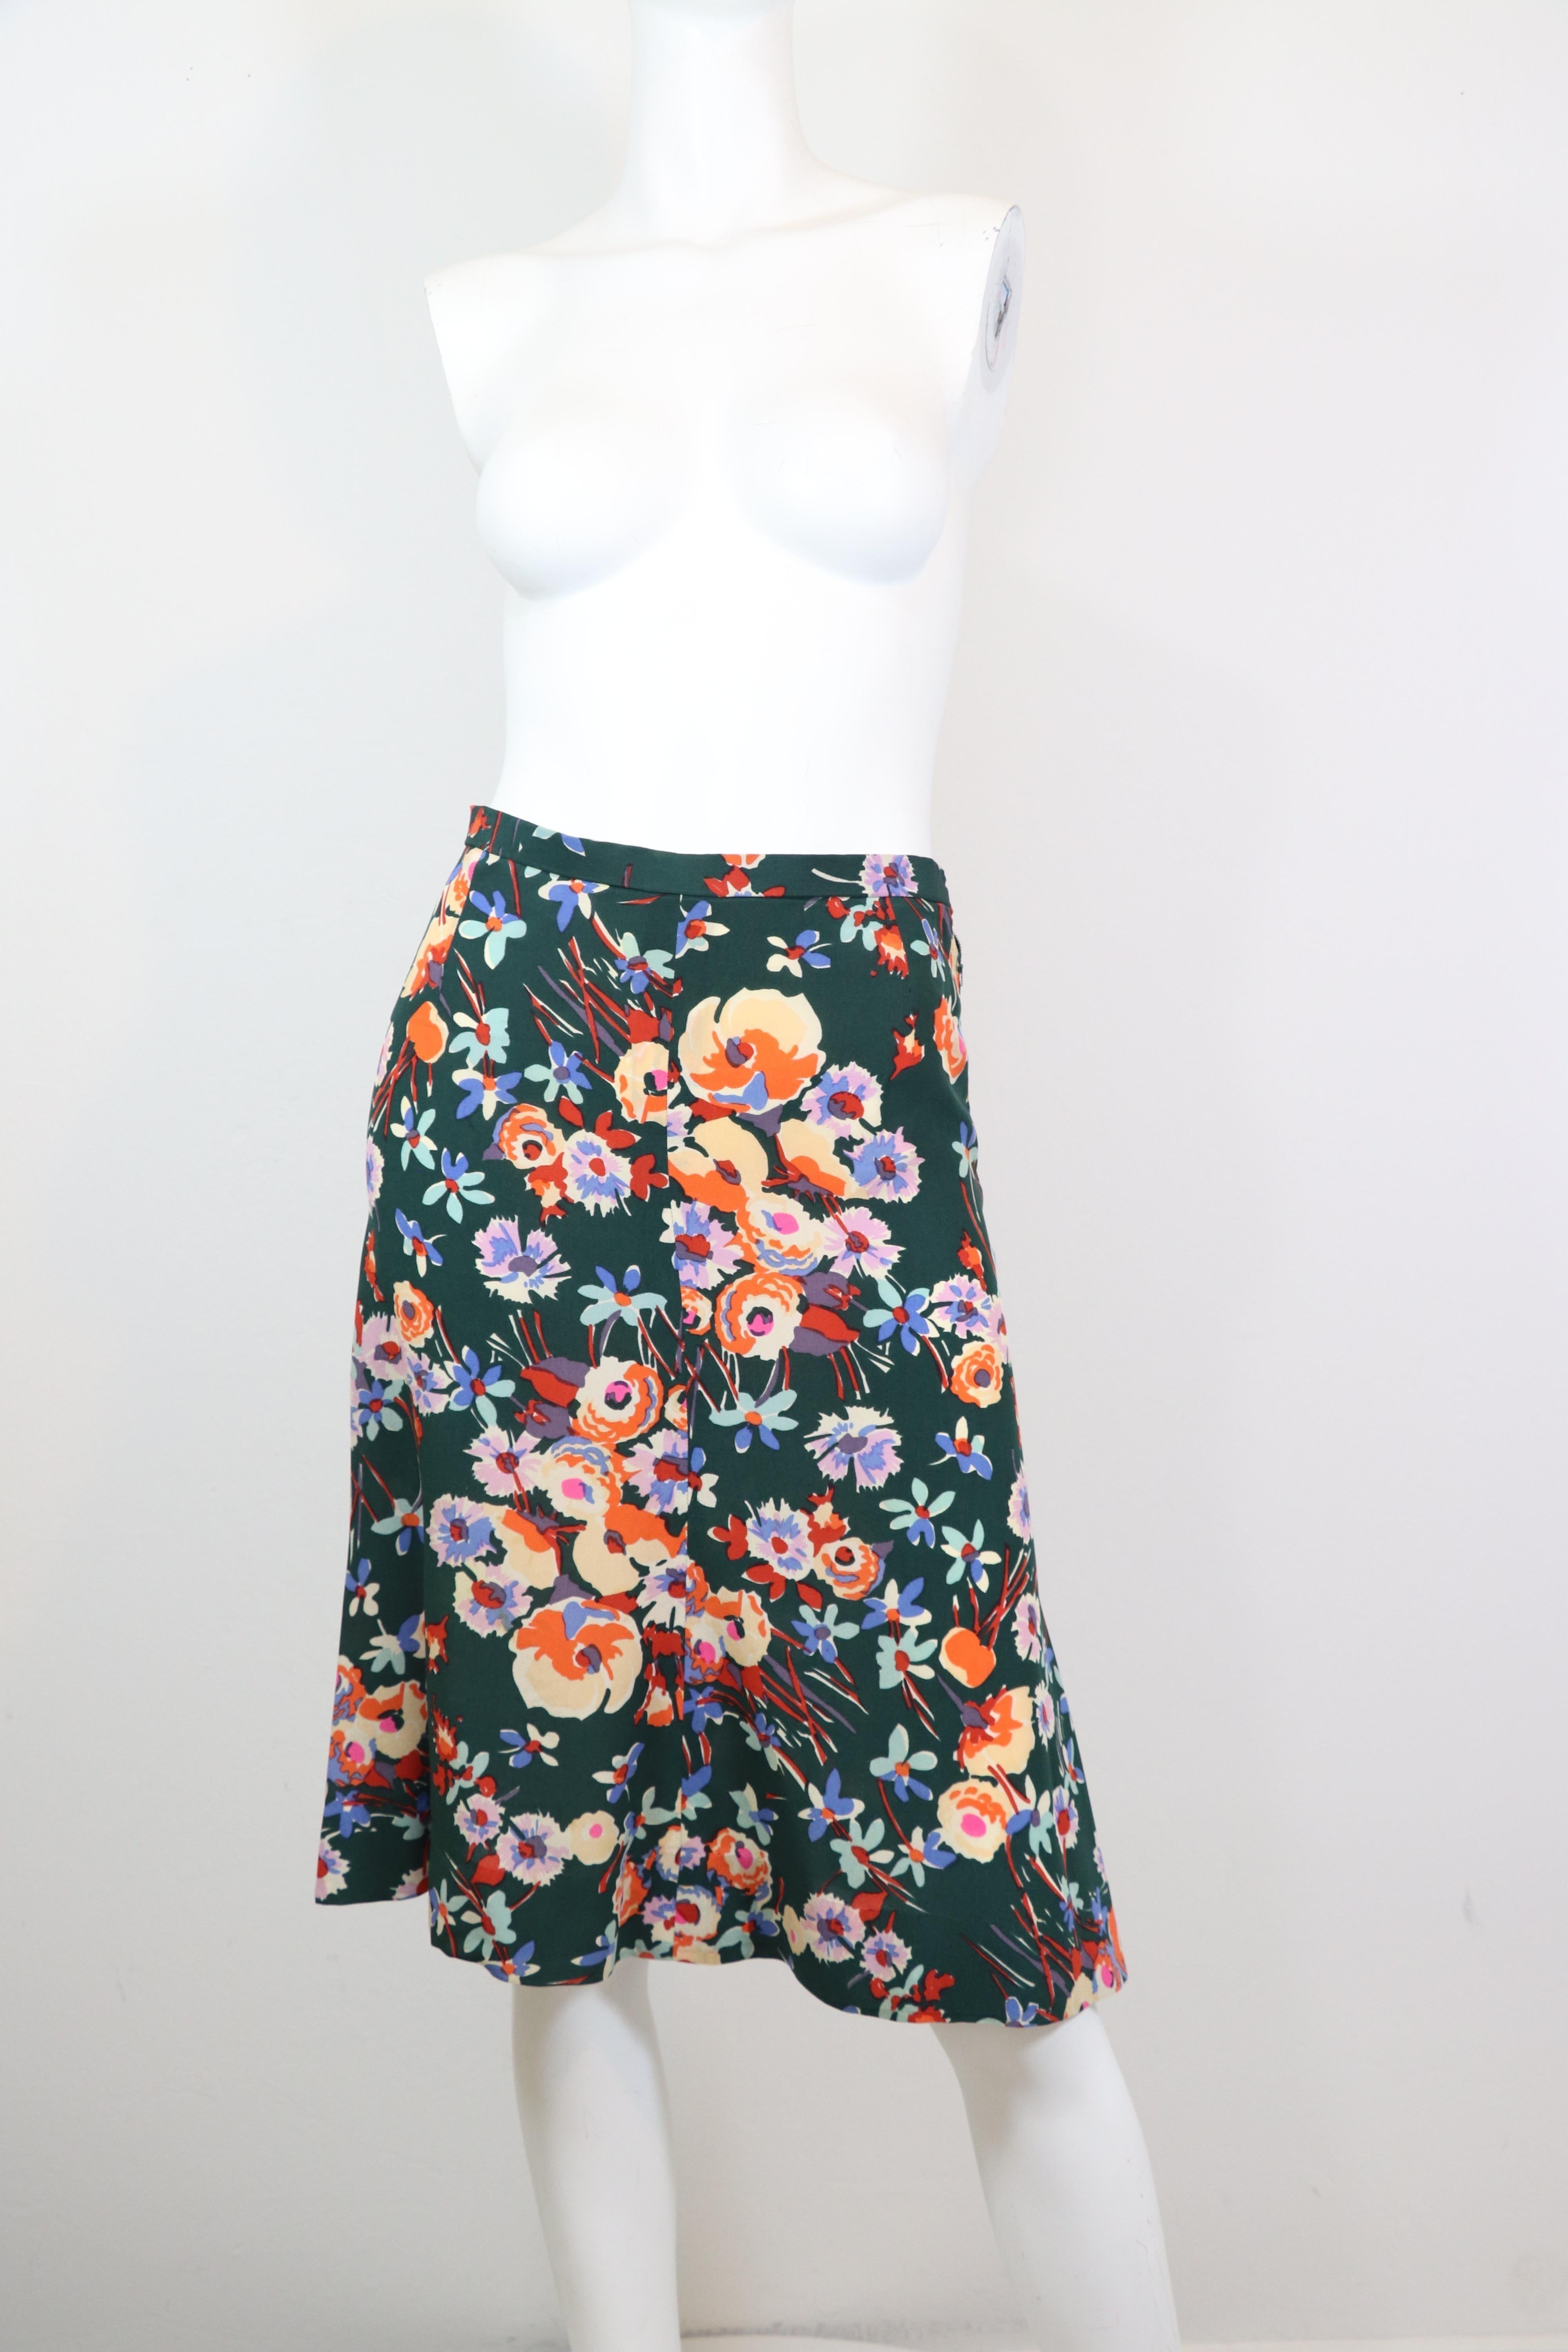 Chloe Lagerfeld Silk Blouse & Skirt Set 1970s 3